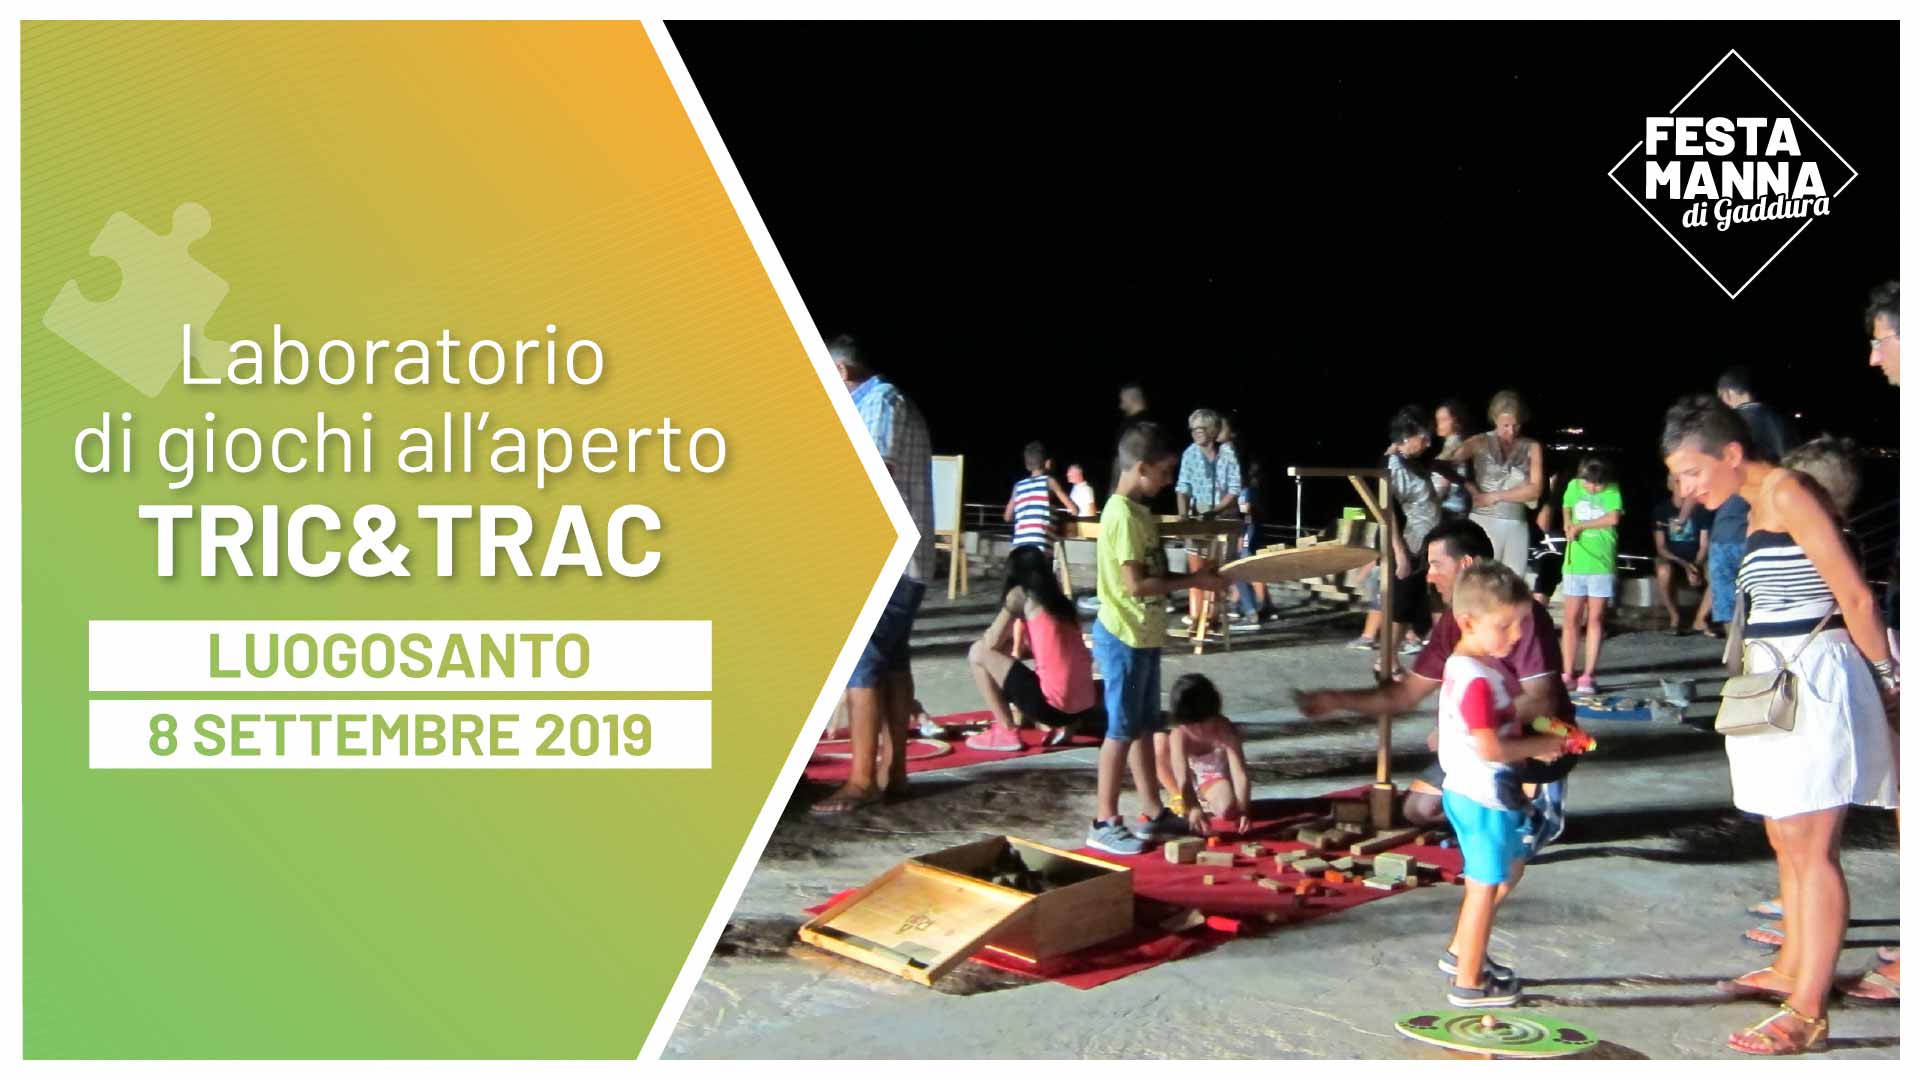 Tric & Trac, taller de construccion de juegos de madera | Festa Manna di Gaddura 2019